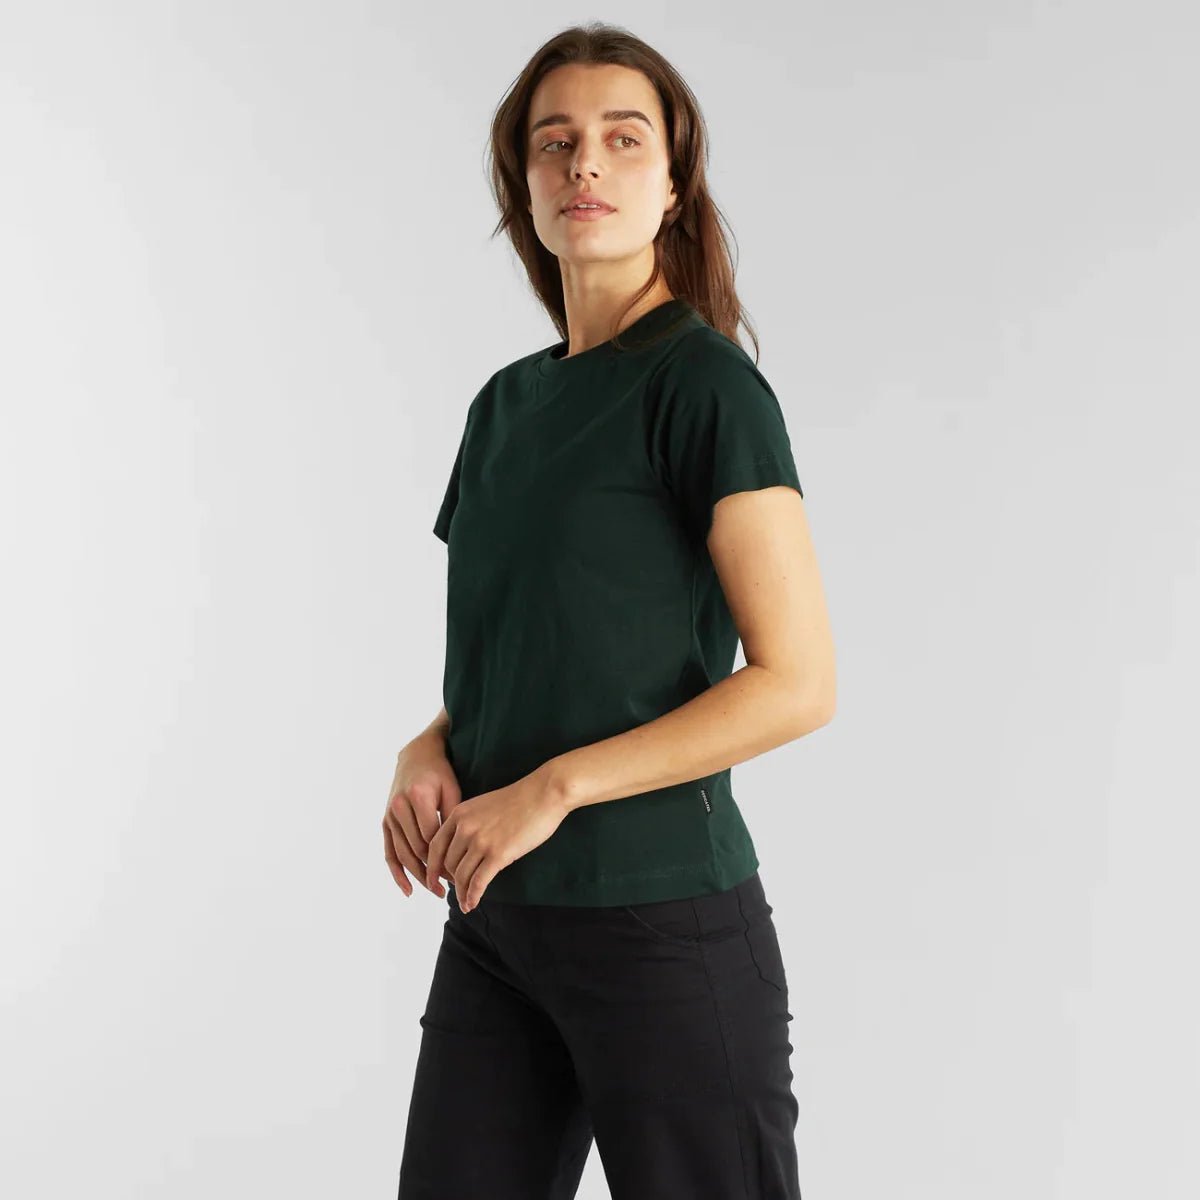 T-shirt coton biologique - Mysen - vert foncé - fairytale